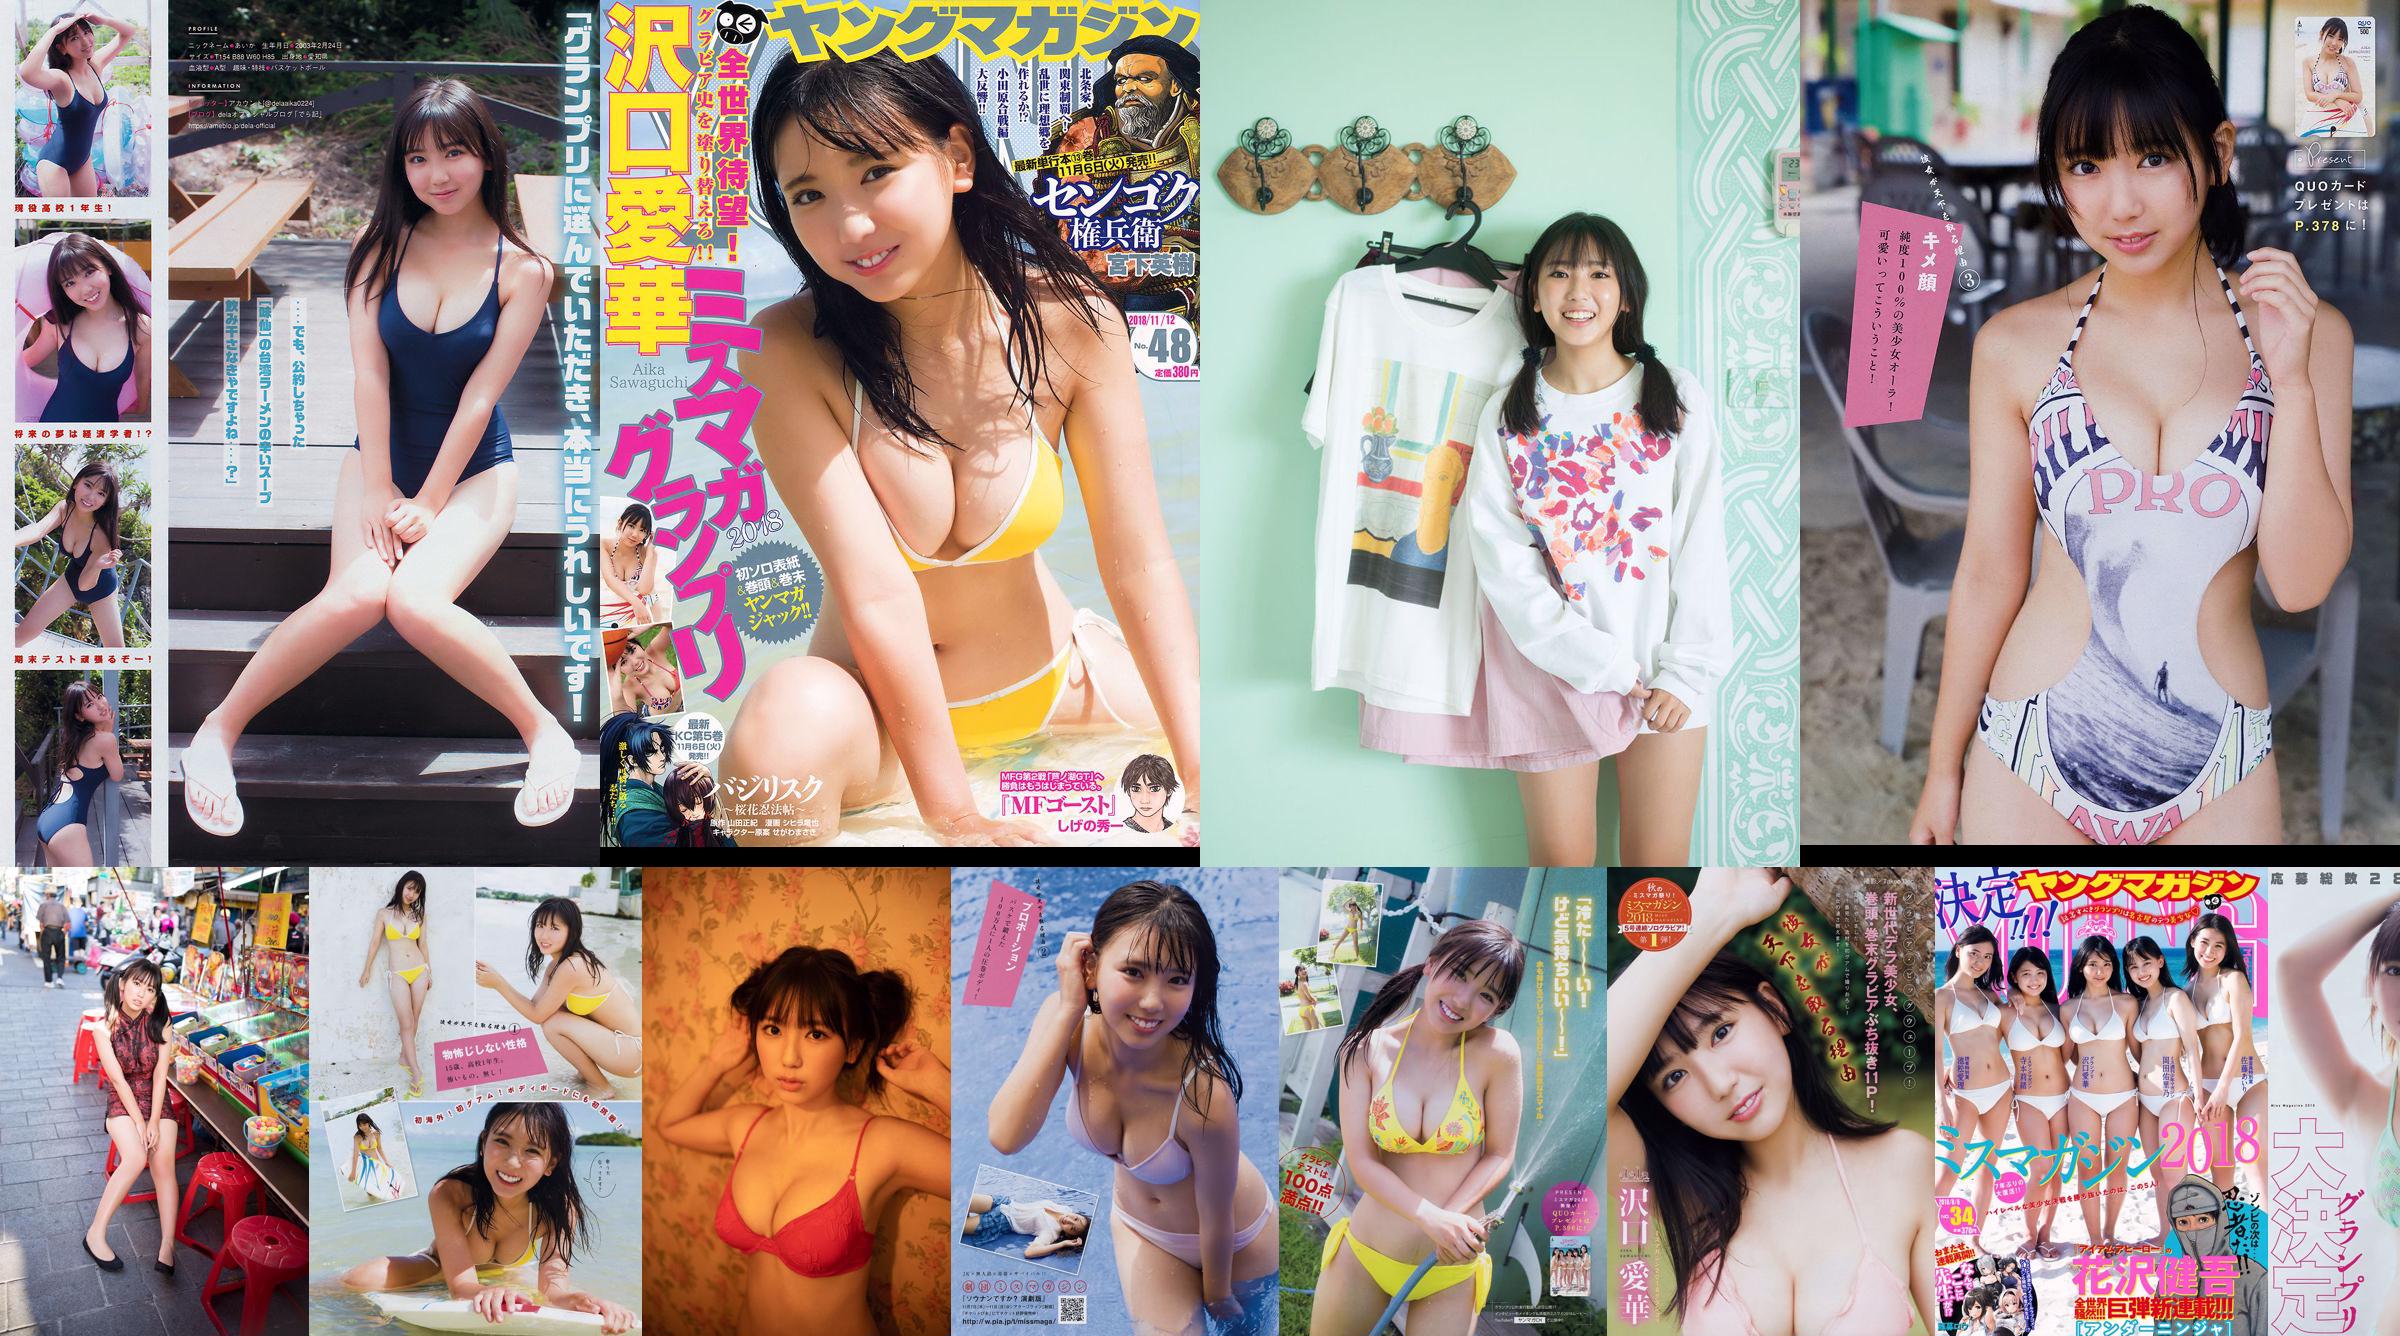 [Majalah Muda] Majalah Foto Aika Sawaguchi No.48 tahun 2018 No.95801a Halaman 1